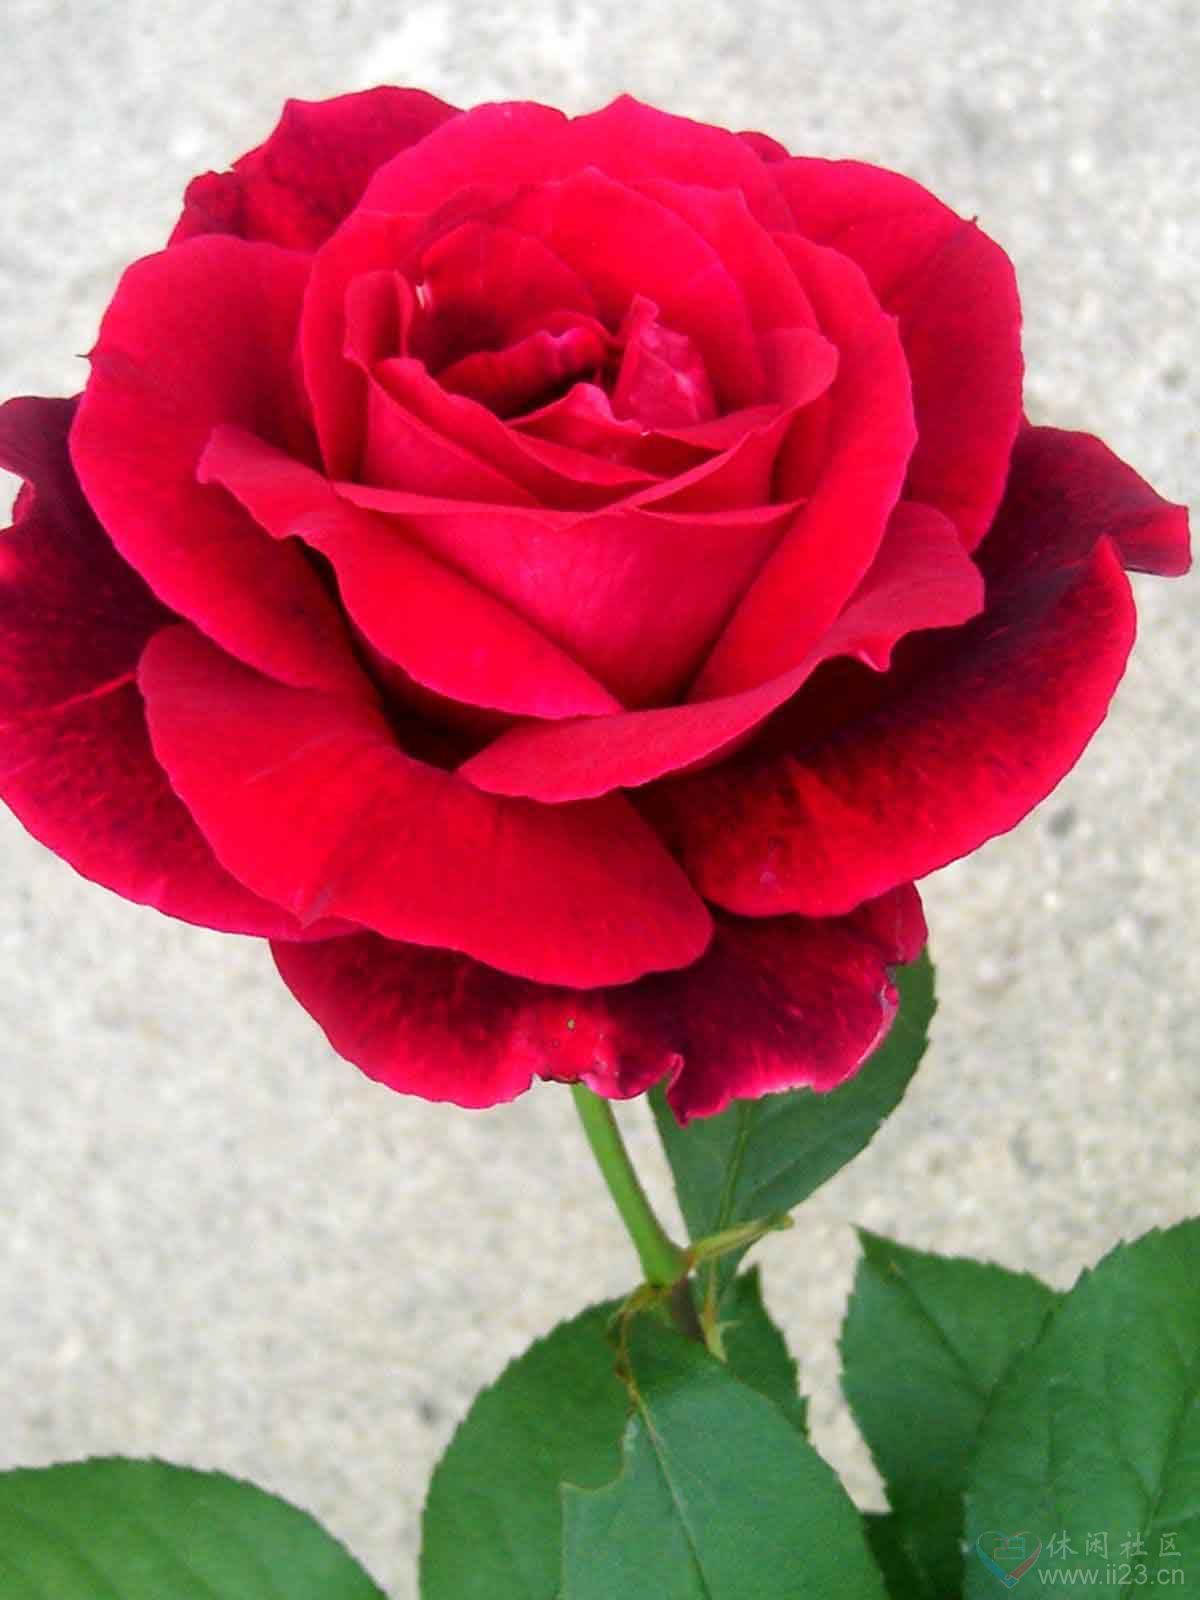 红玫瑰花语:热恋、希望与你泛起激情的爱 - ※